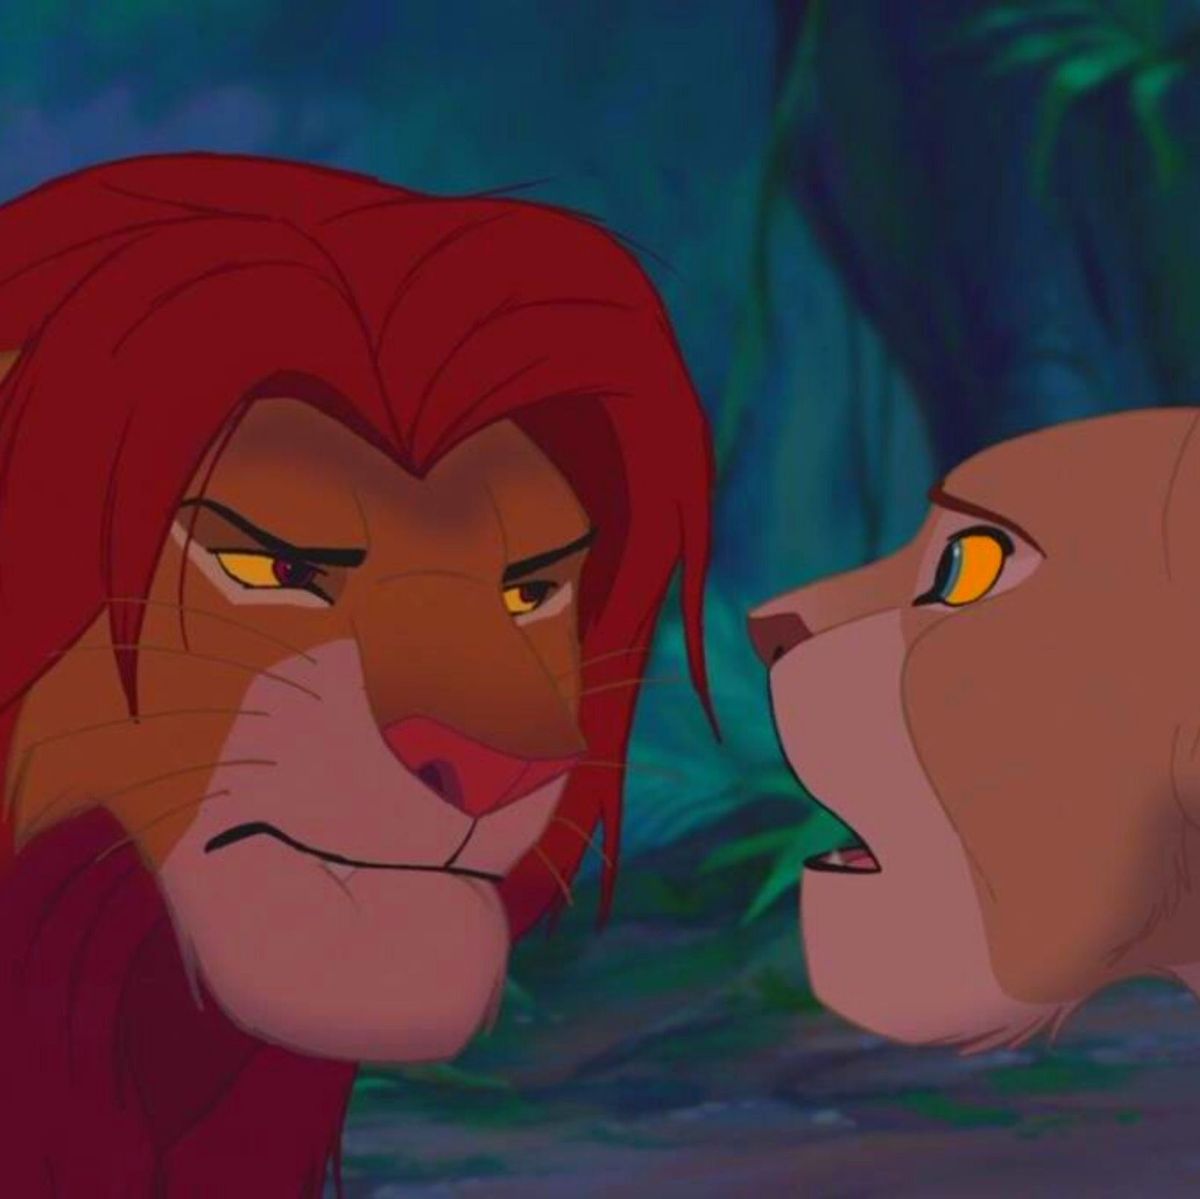 El rey león: La teoría que dice que Simba y Nala son hermanos